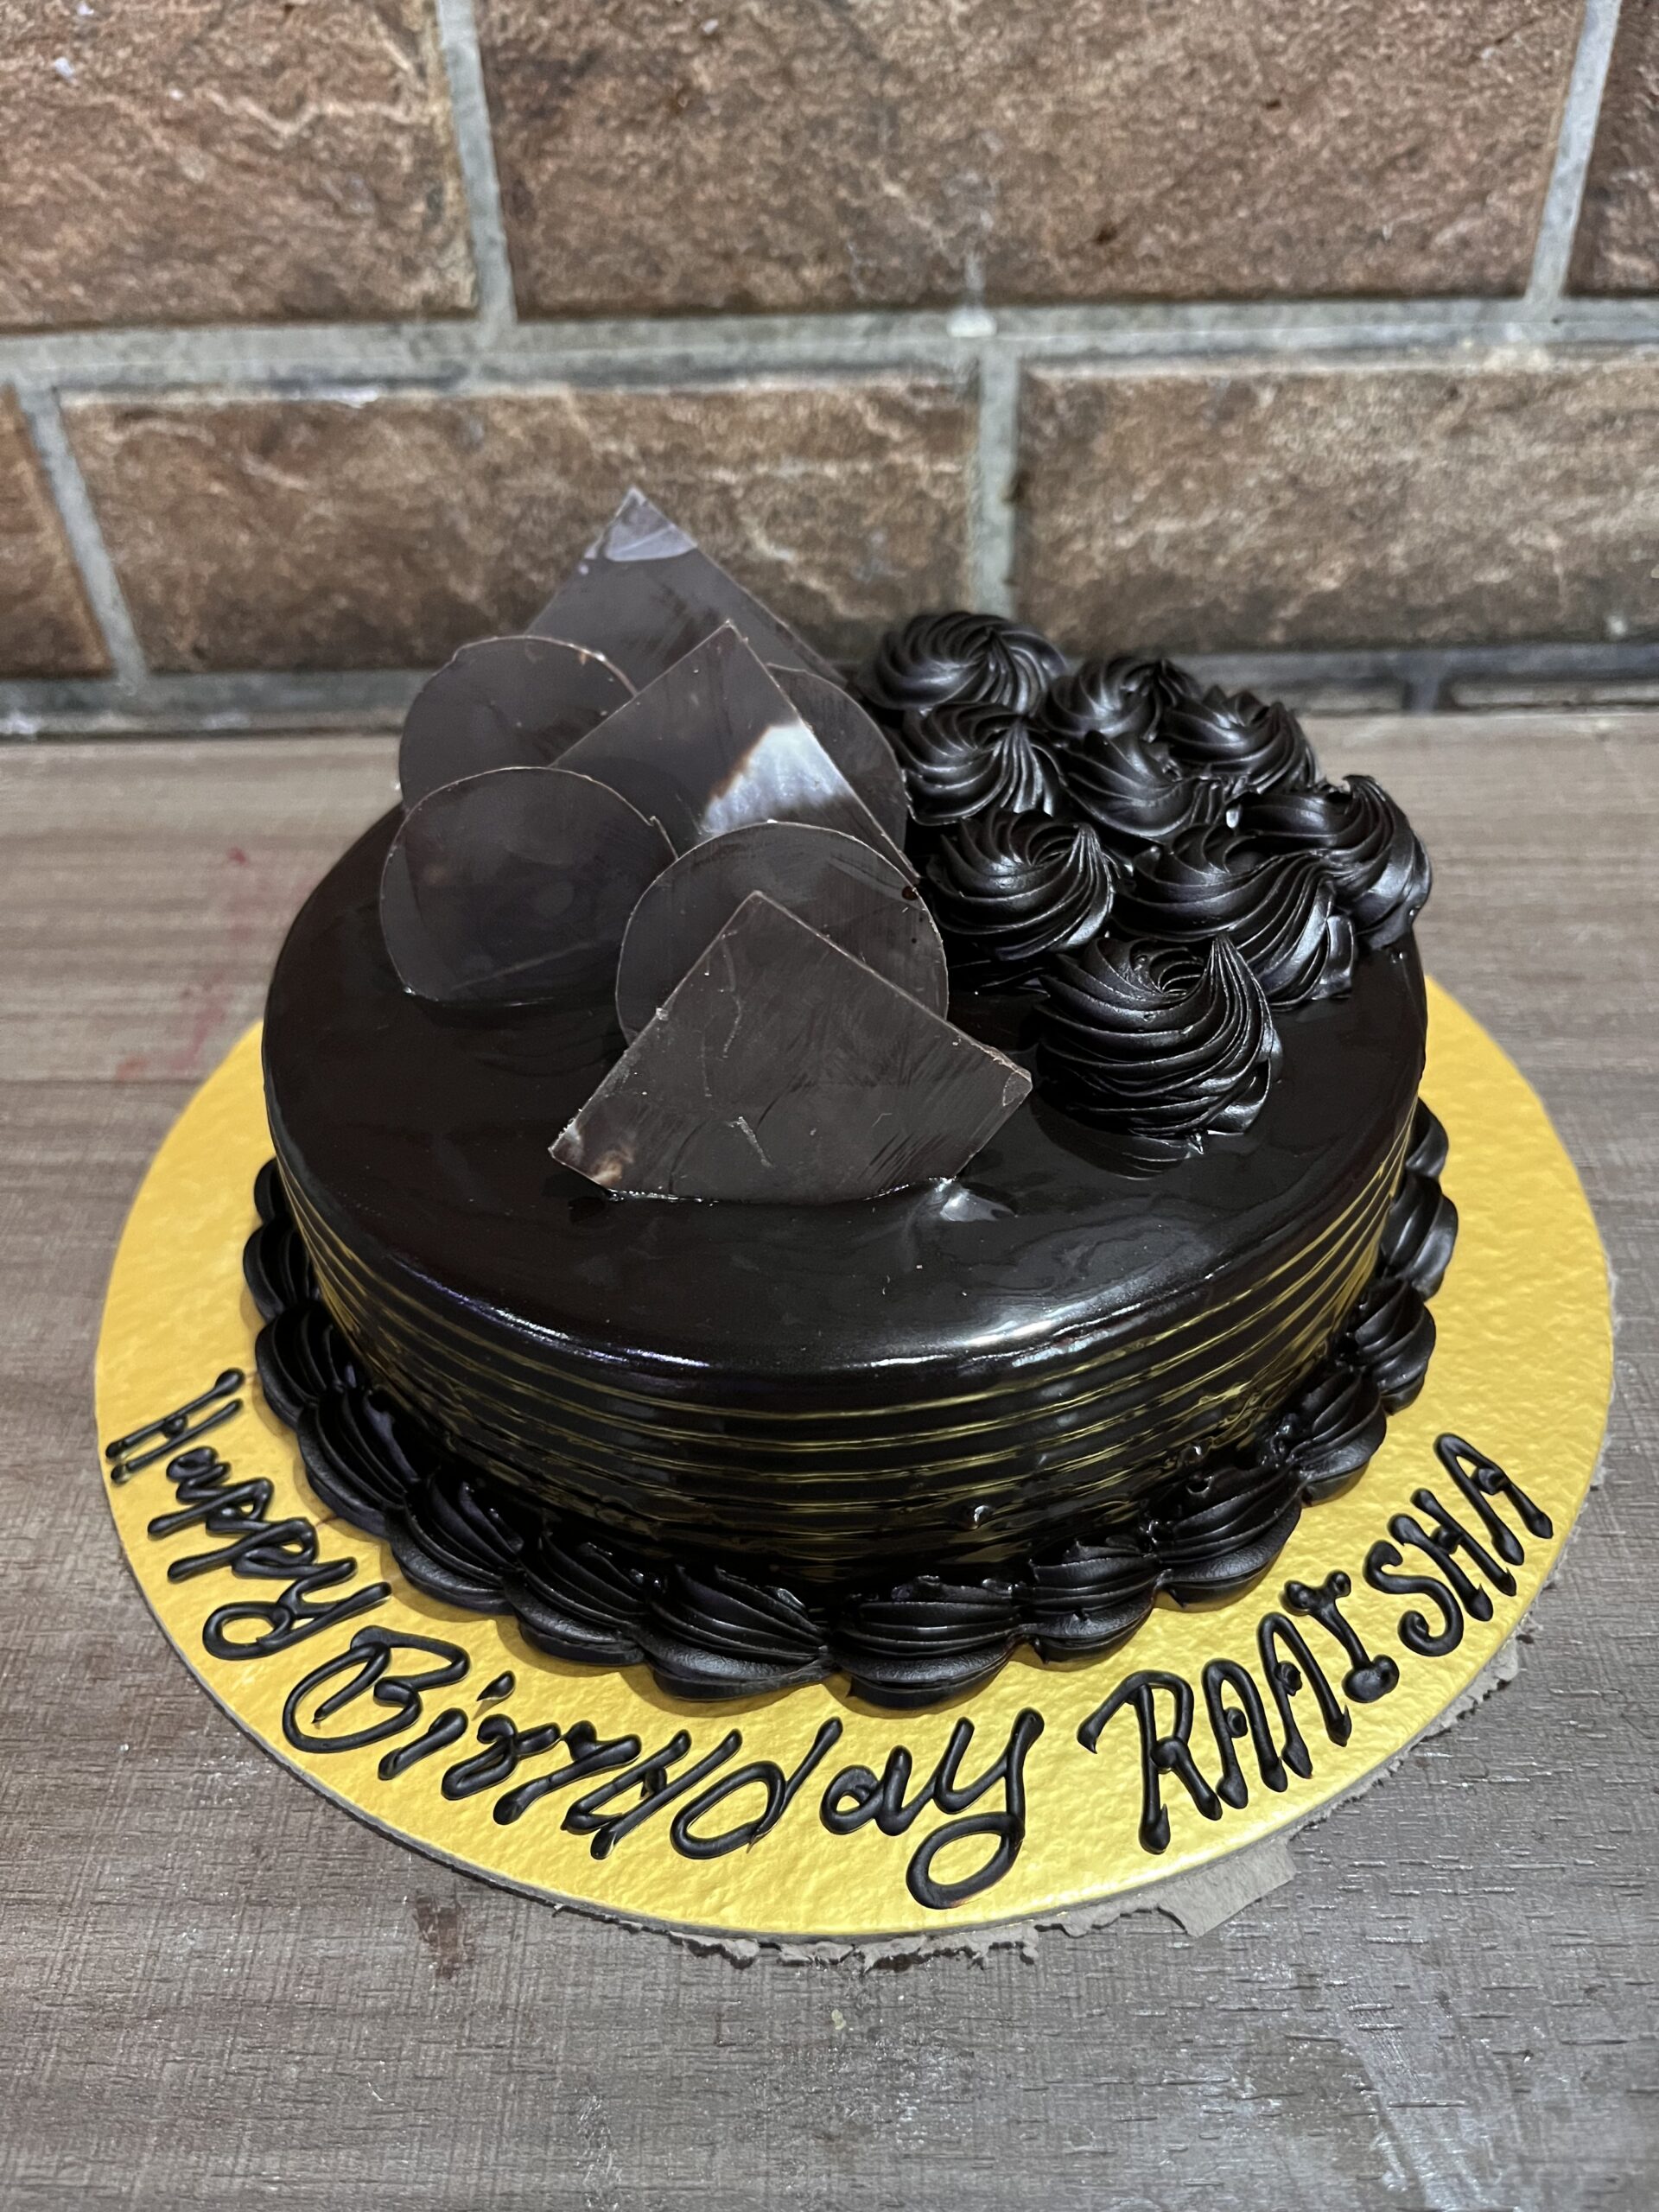 Ready-to-go cake — Celebrating Life Cake Boutique